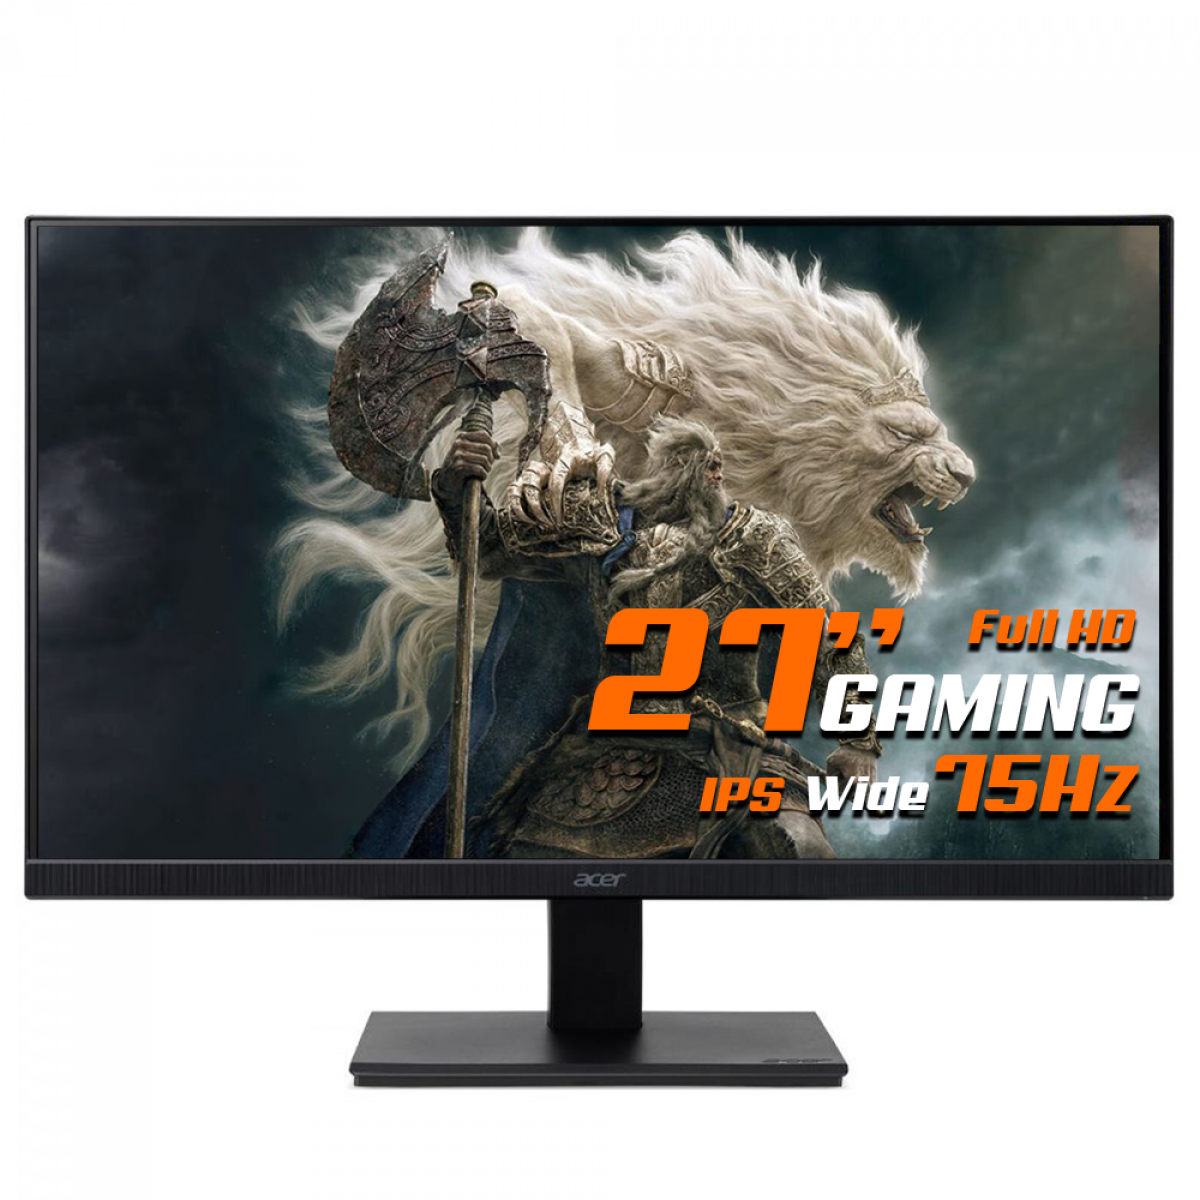 Monitor Acer V277, 27 Pol, IPS, Wide, Full HD, HDMI/VGA, VESA, 75Hz, V277